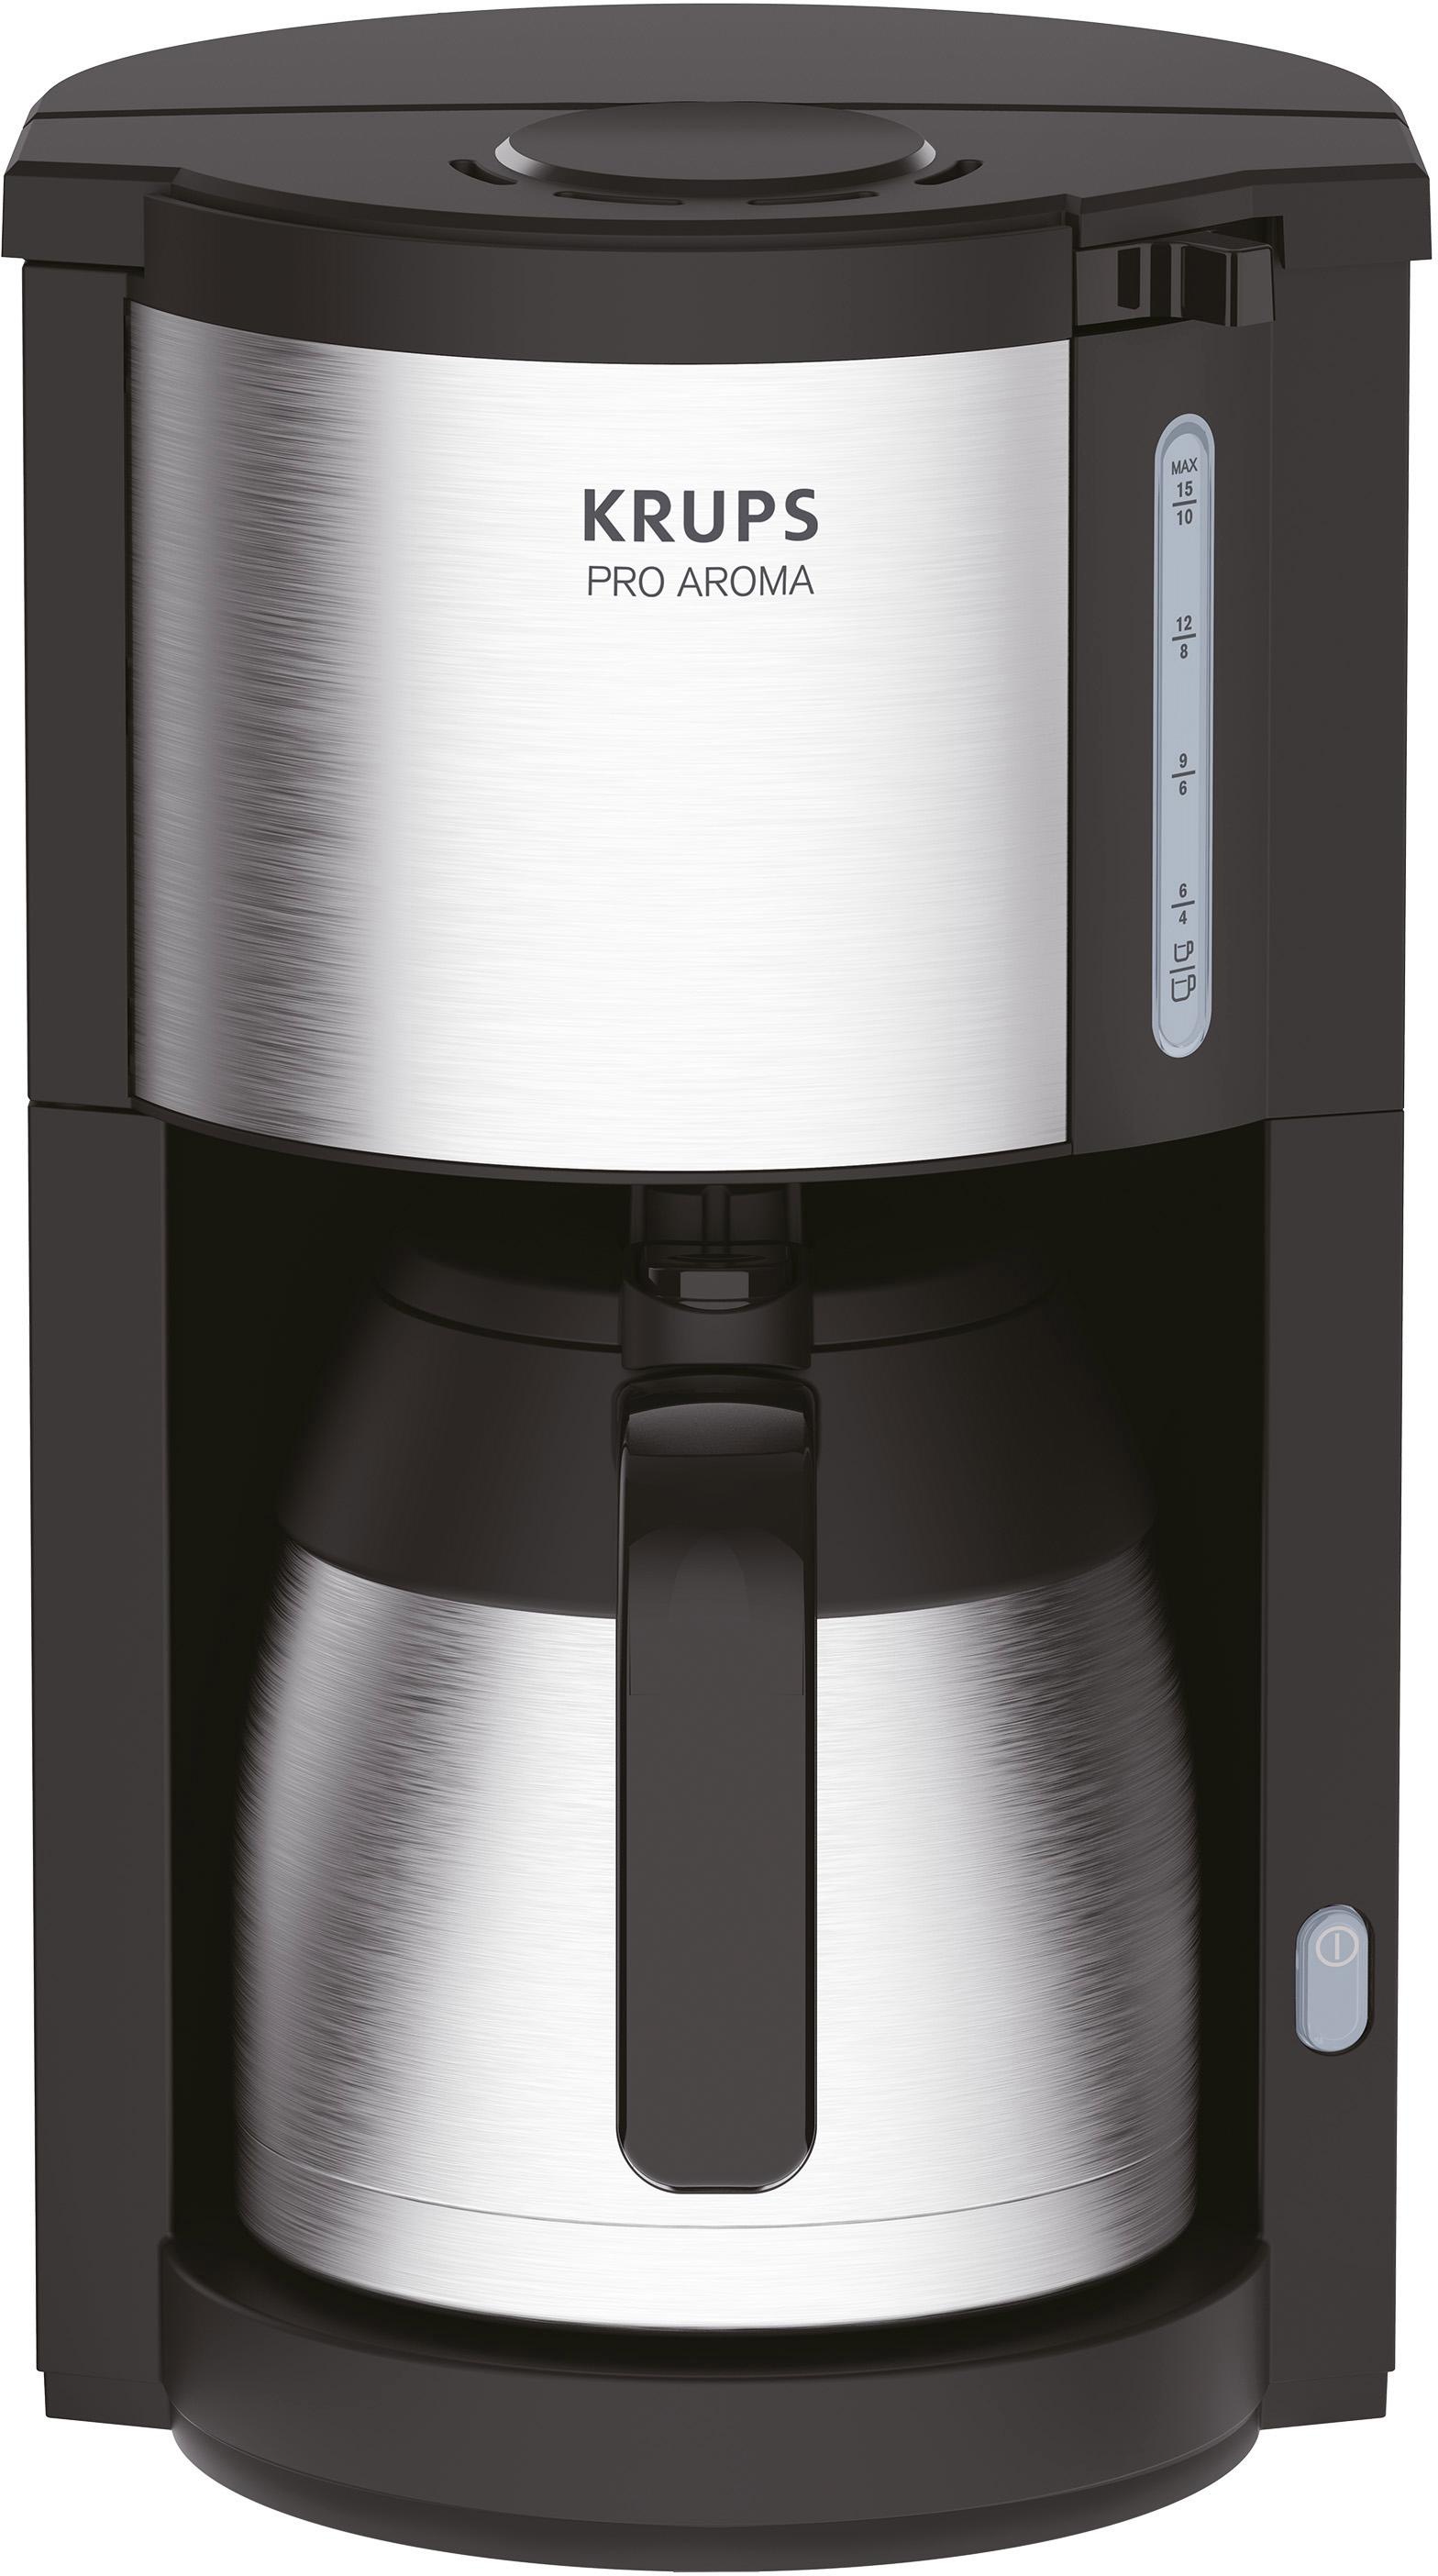 1,25 »KM305D Kaffeekanne, für mit Pro 3 Papierfilter, Garantie Filterkaffeemaschine Tassen 15 Jahren Krups XXL 10 l Aroma«, bis